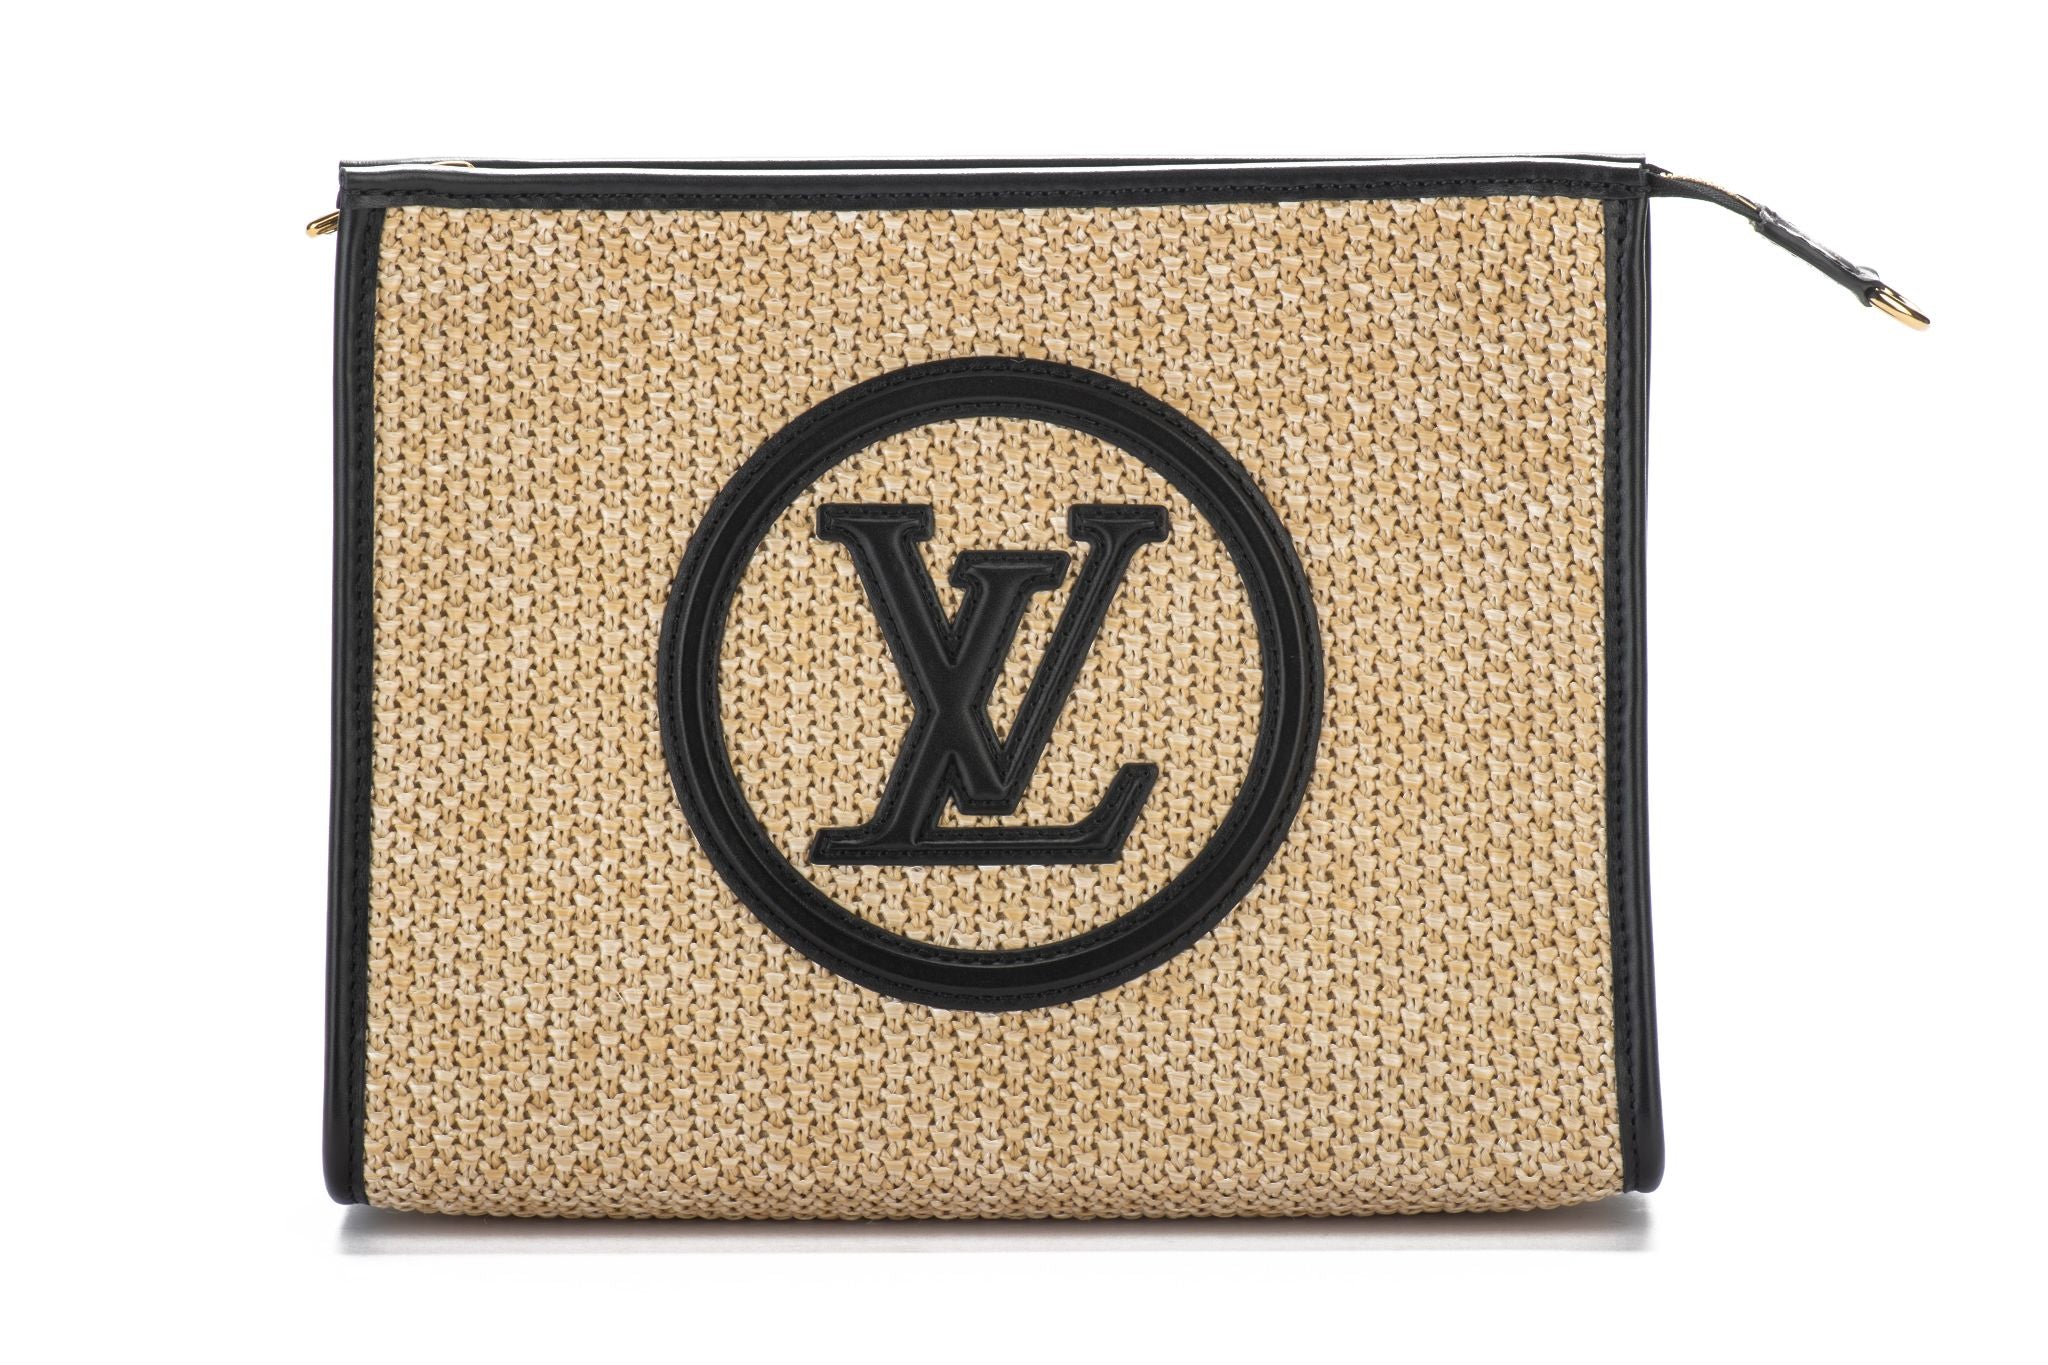 Vuitton BNIB 2 Tone Monogram Hobo Bag - Vintage Lux